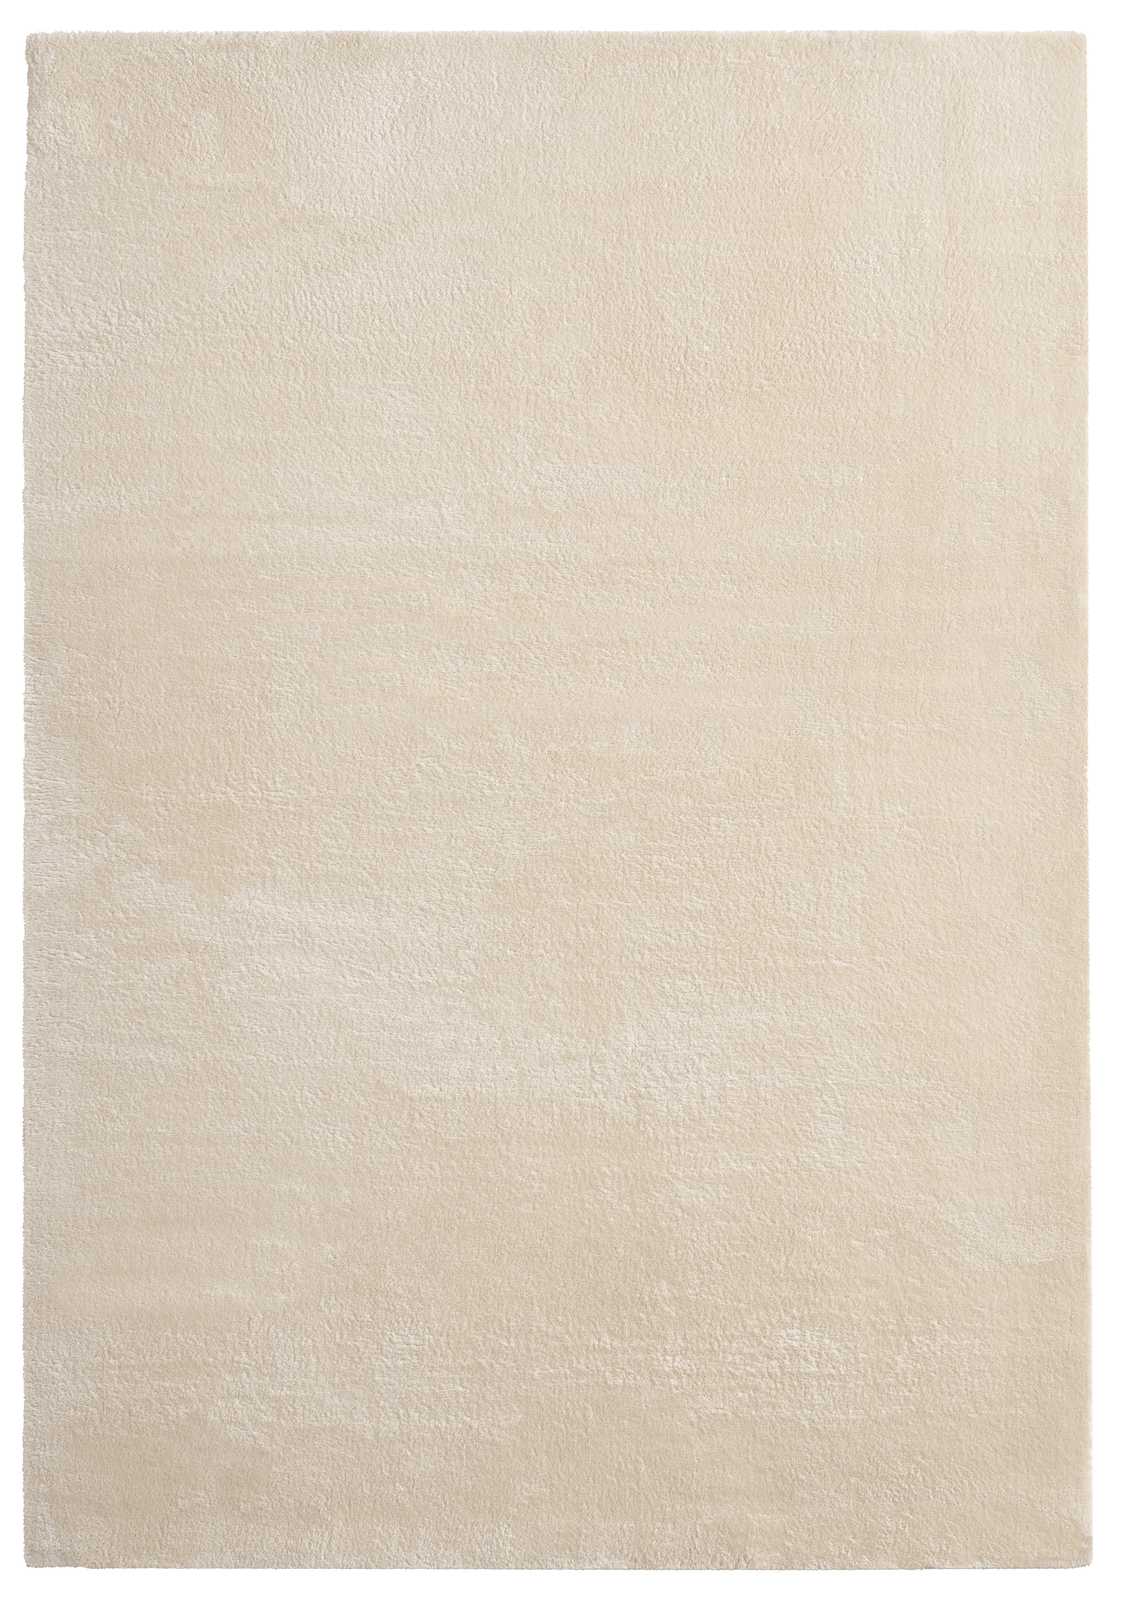             Tapis moelleux à poils longs beige - 340 x 240 cm
        